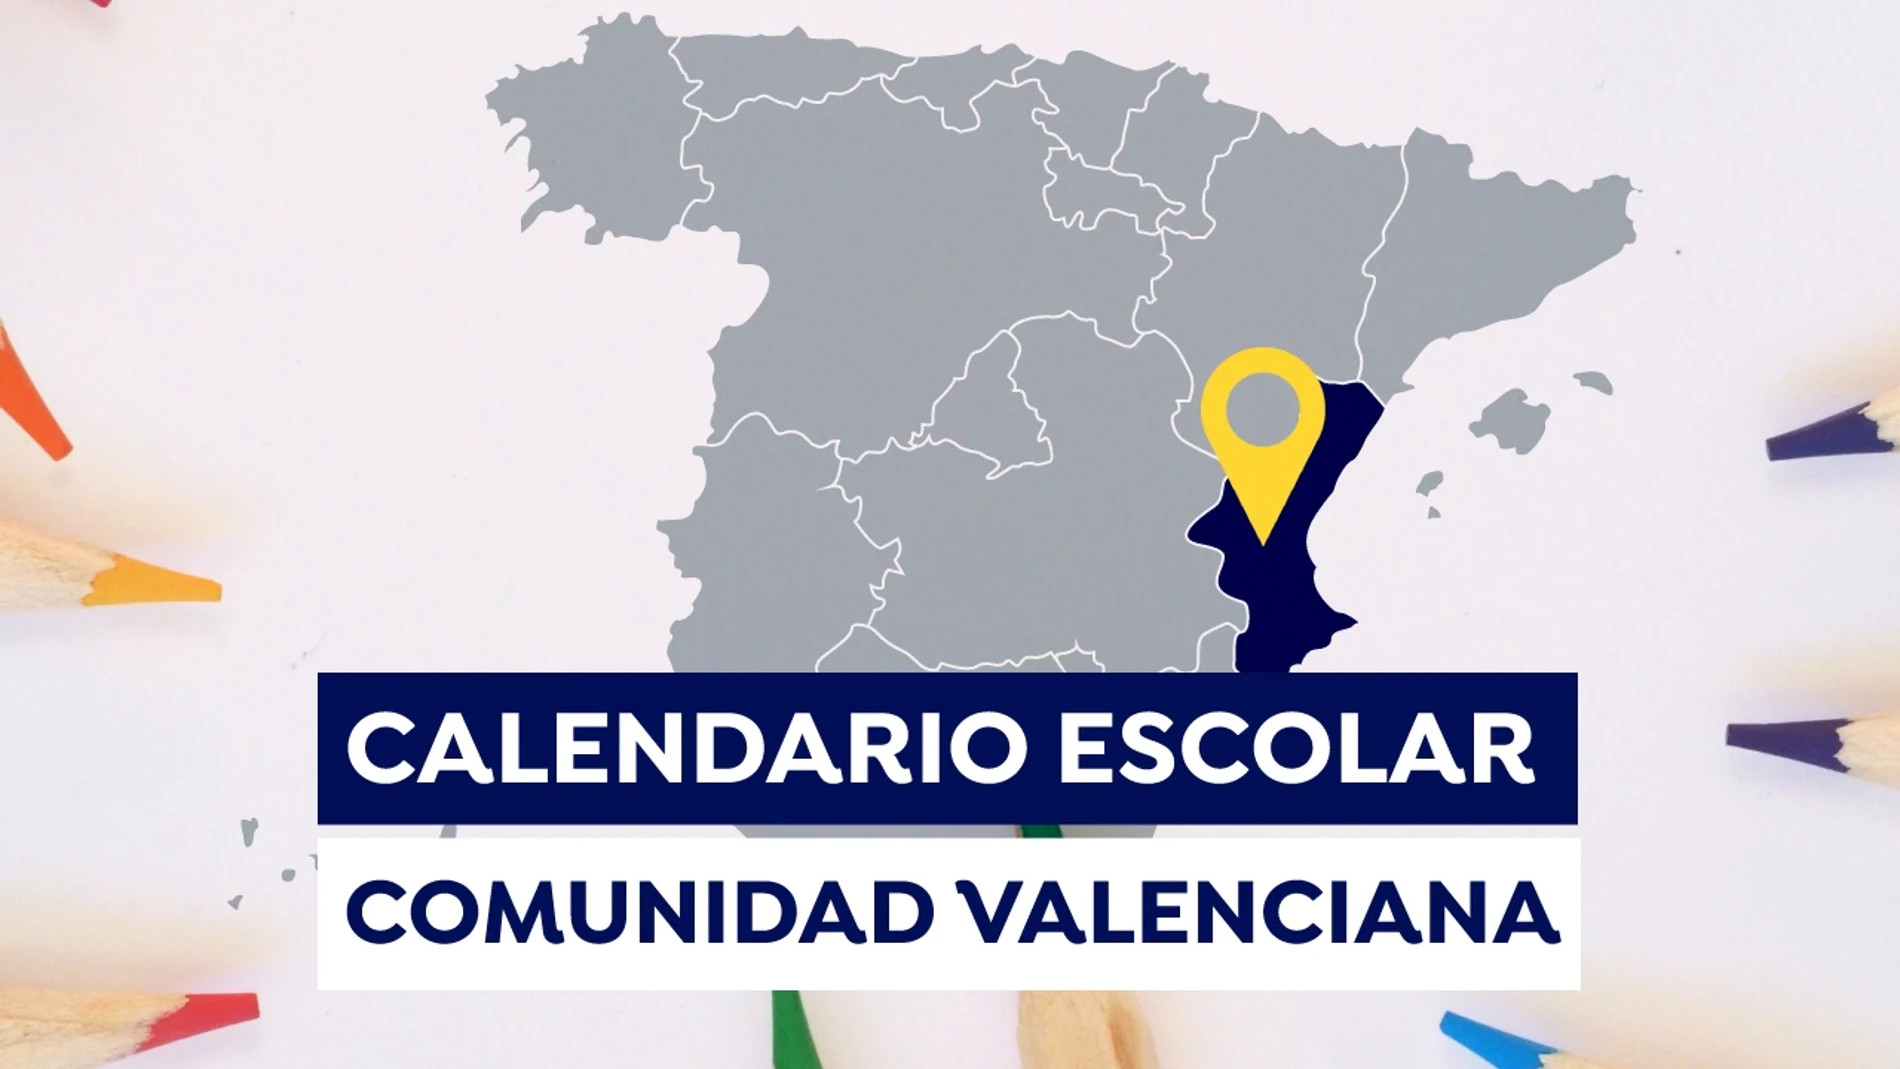 Calendario escolar Comunidad Valenciana2021-2022: Fechas de inicio de las clases, días lectivos y vacaciones